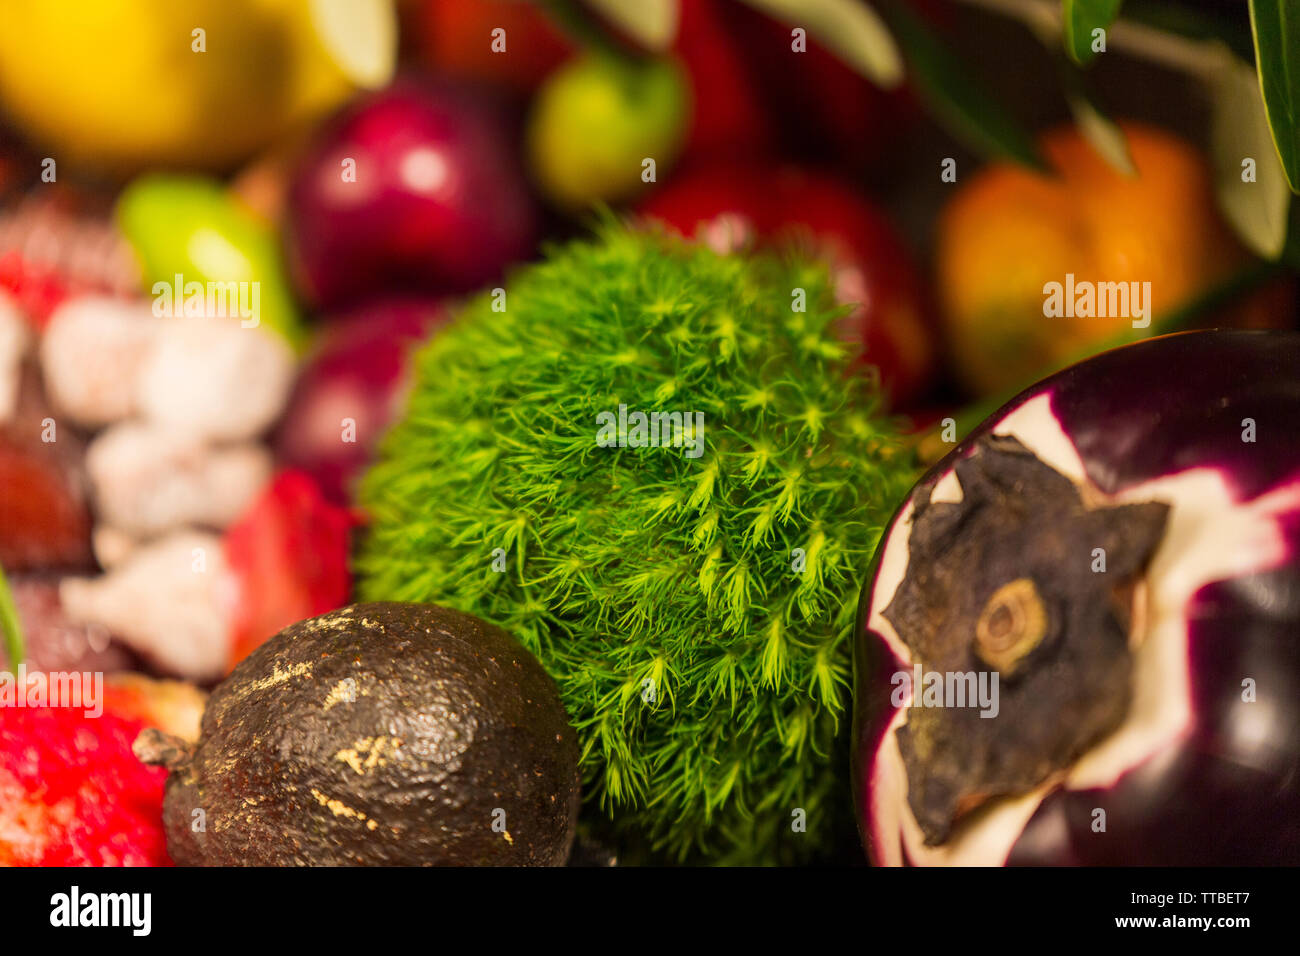 Cluse, saisonale Lebensmittel auf dekorierten Tisch Stockfoto